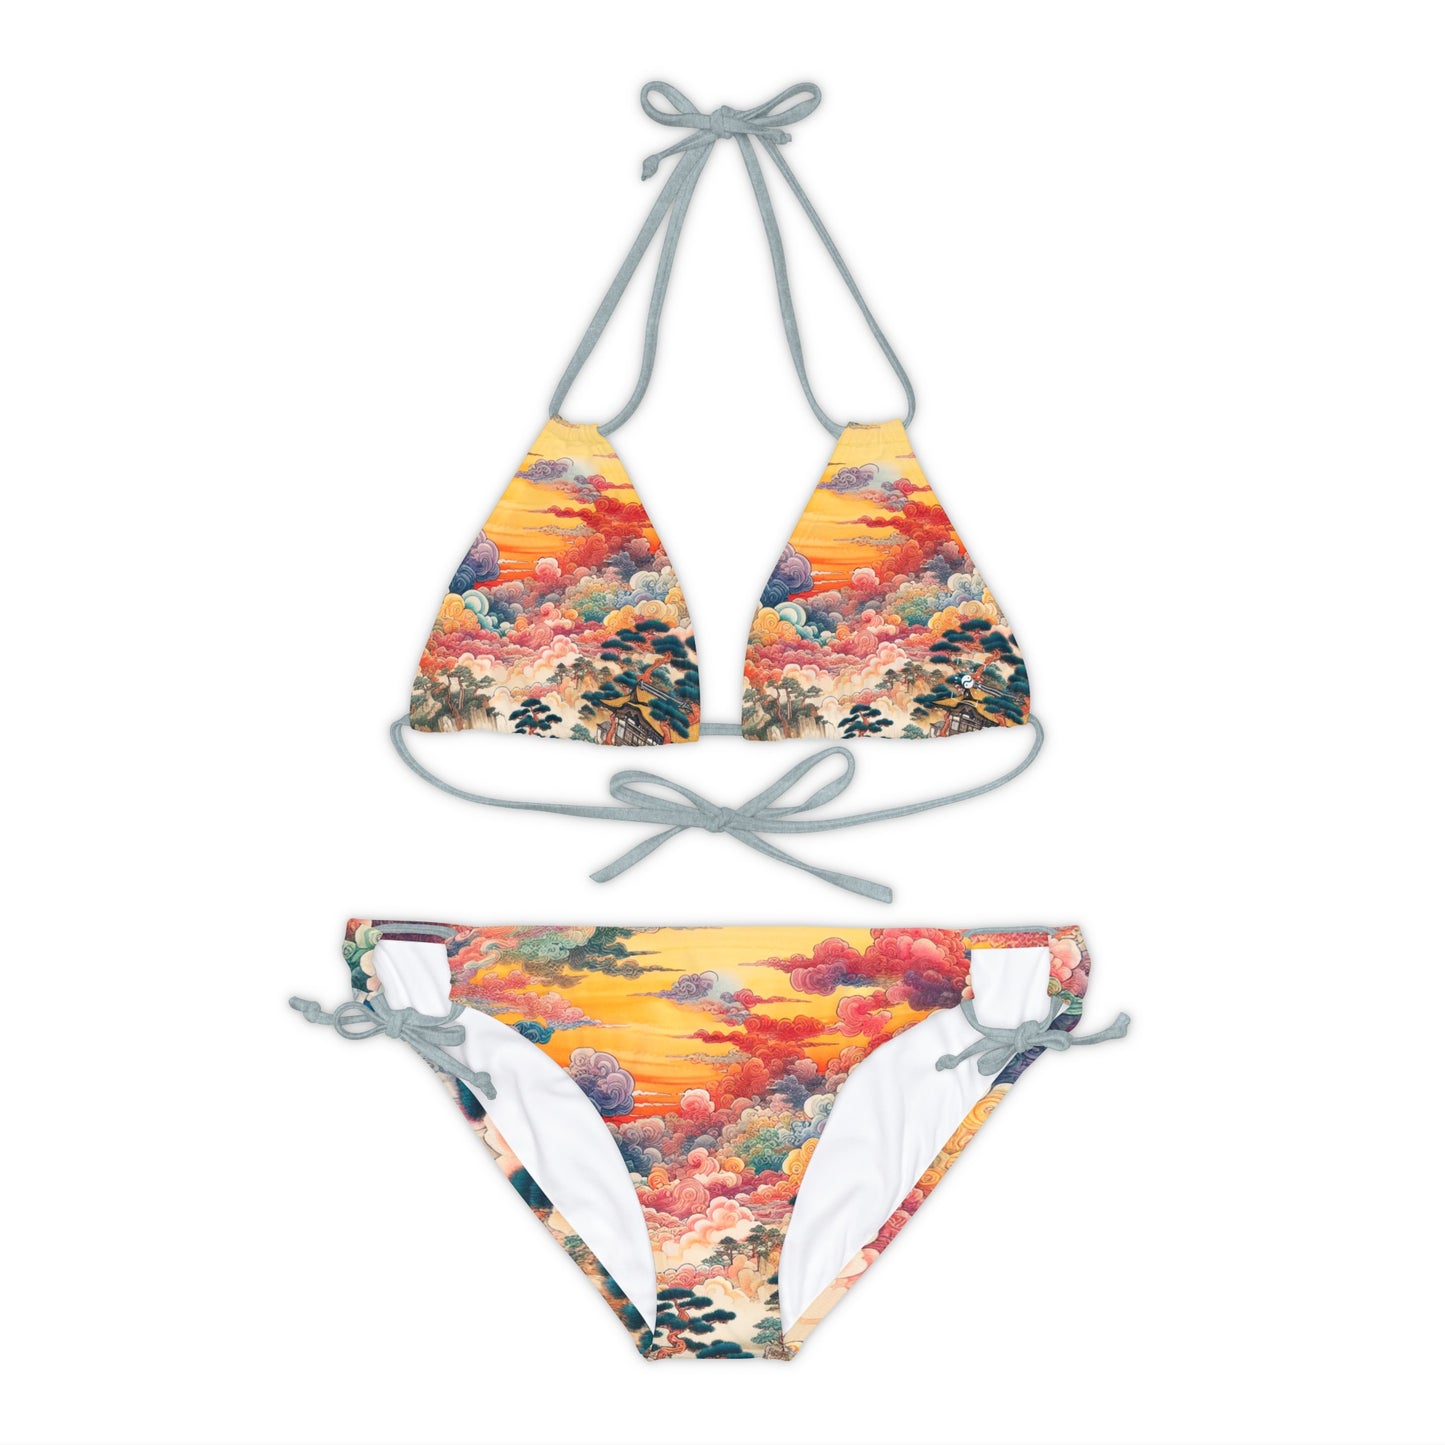 Giovanni Bellascritura - Lace-up Bikini Set